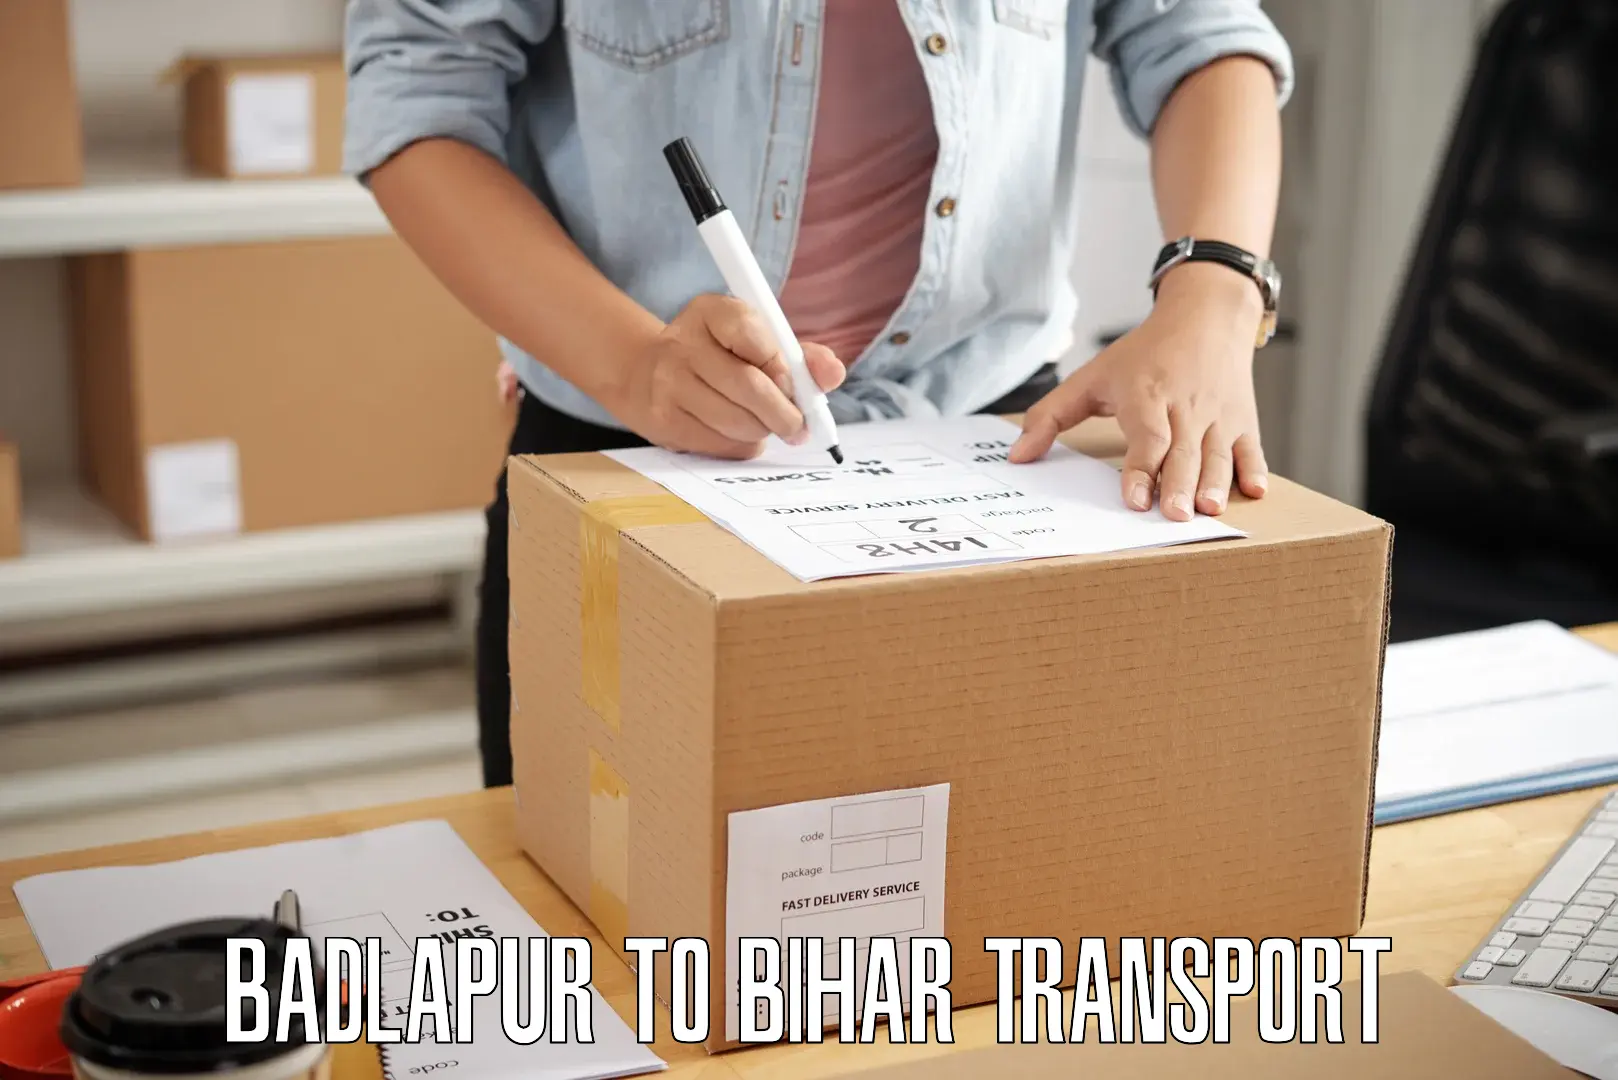 Online transport service Badlapur to Bhojpur